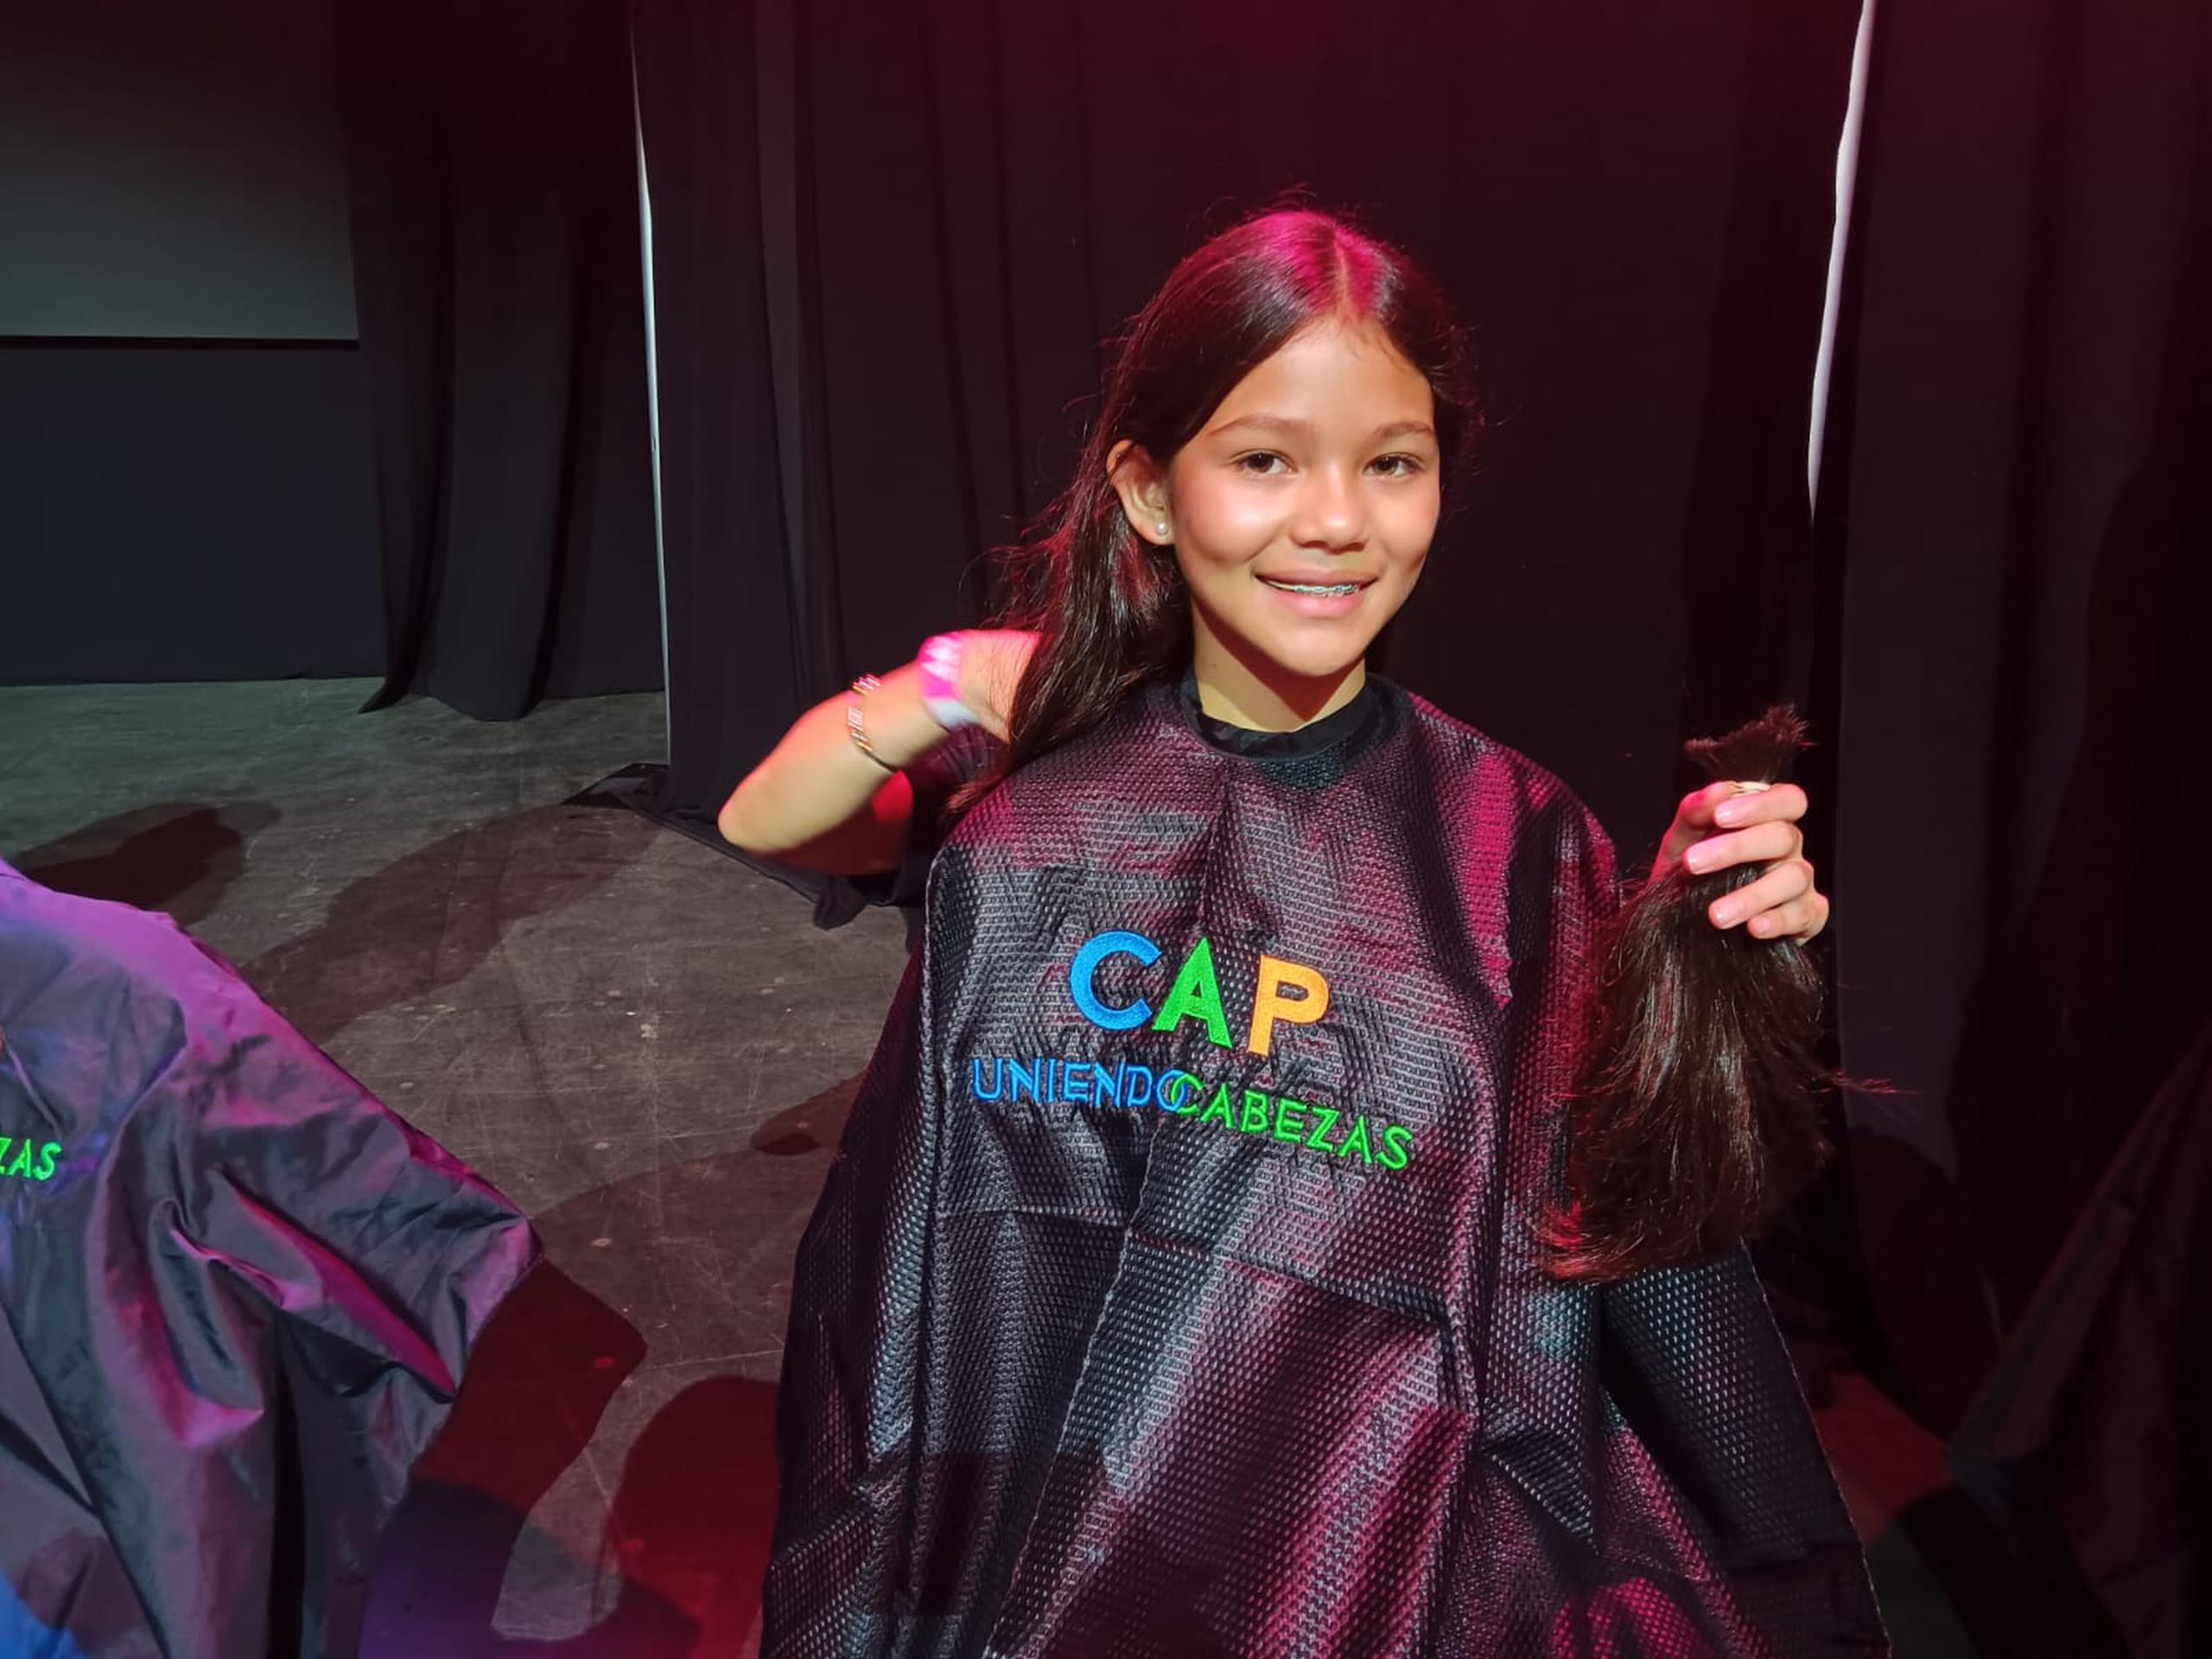 Ánika González, de 11 años, donó su cabello a beneficio de los pacientes que necesitan pelucas.